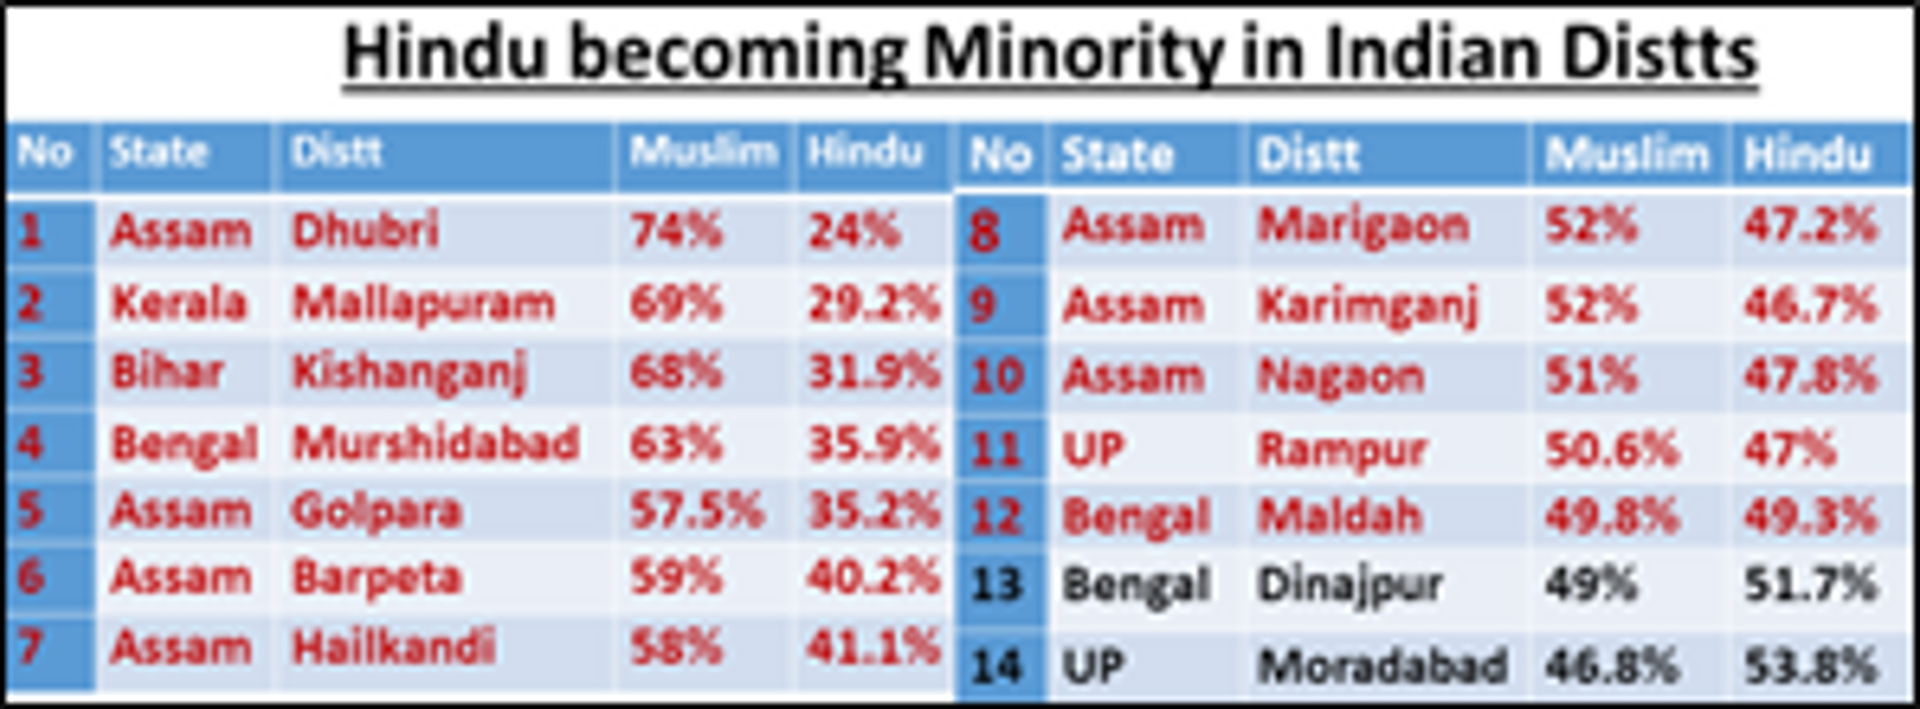 Hindu becoming minority 